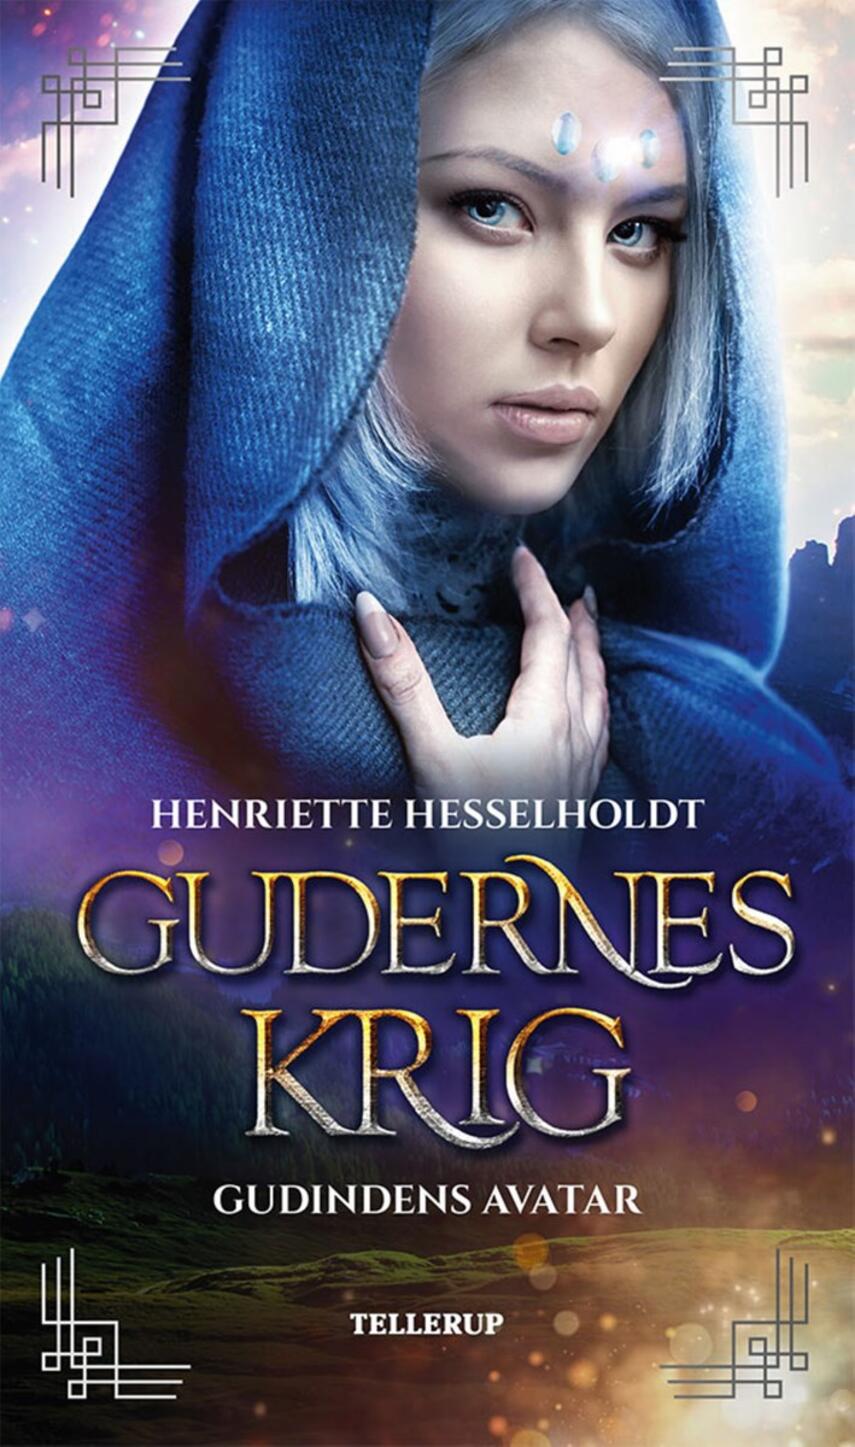 Henriette Hesselholdt: Gudernes krig - gudindens avatar